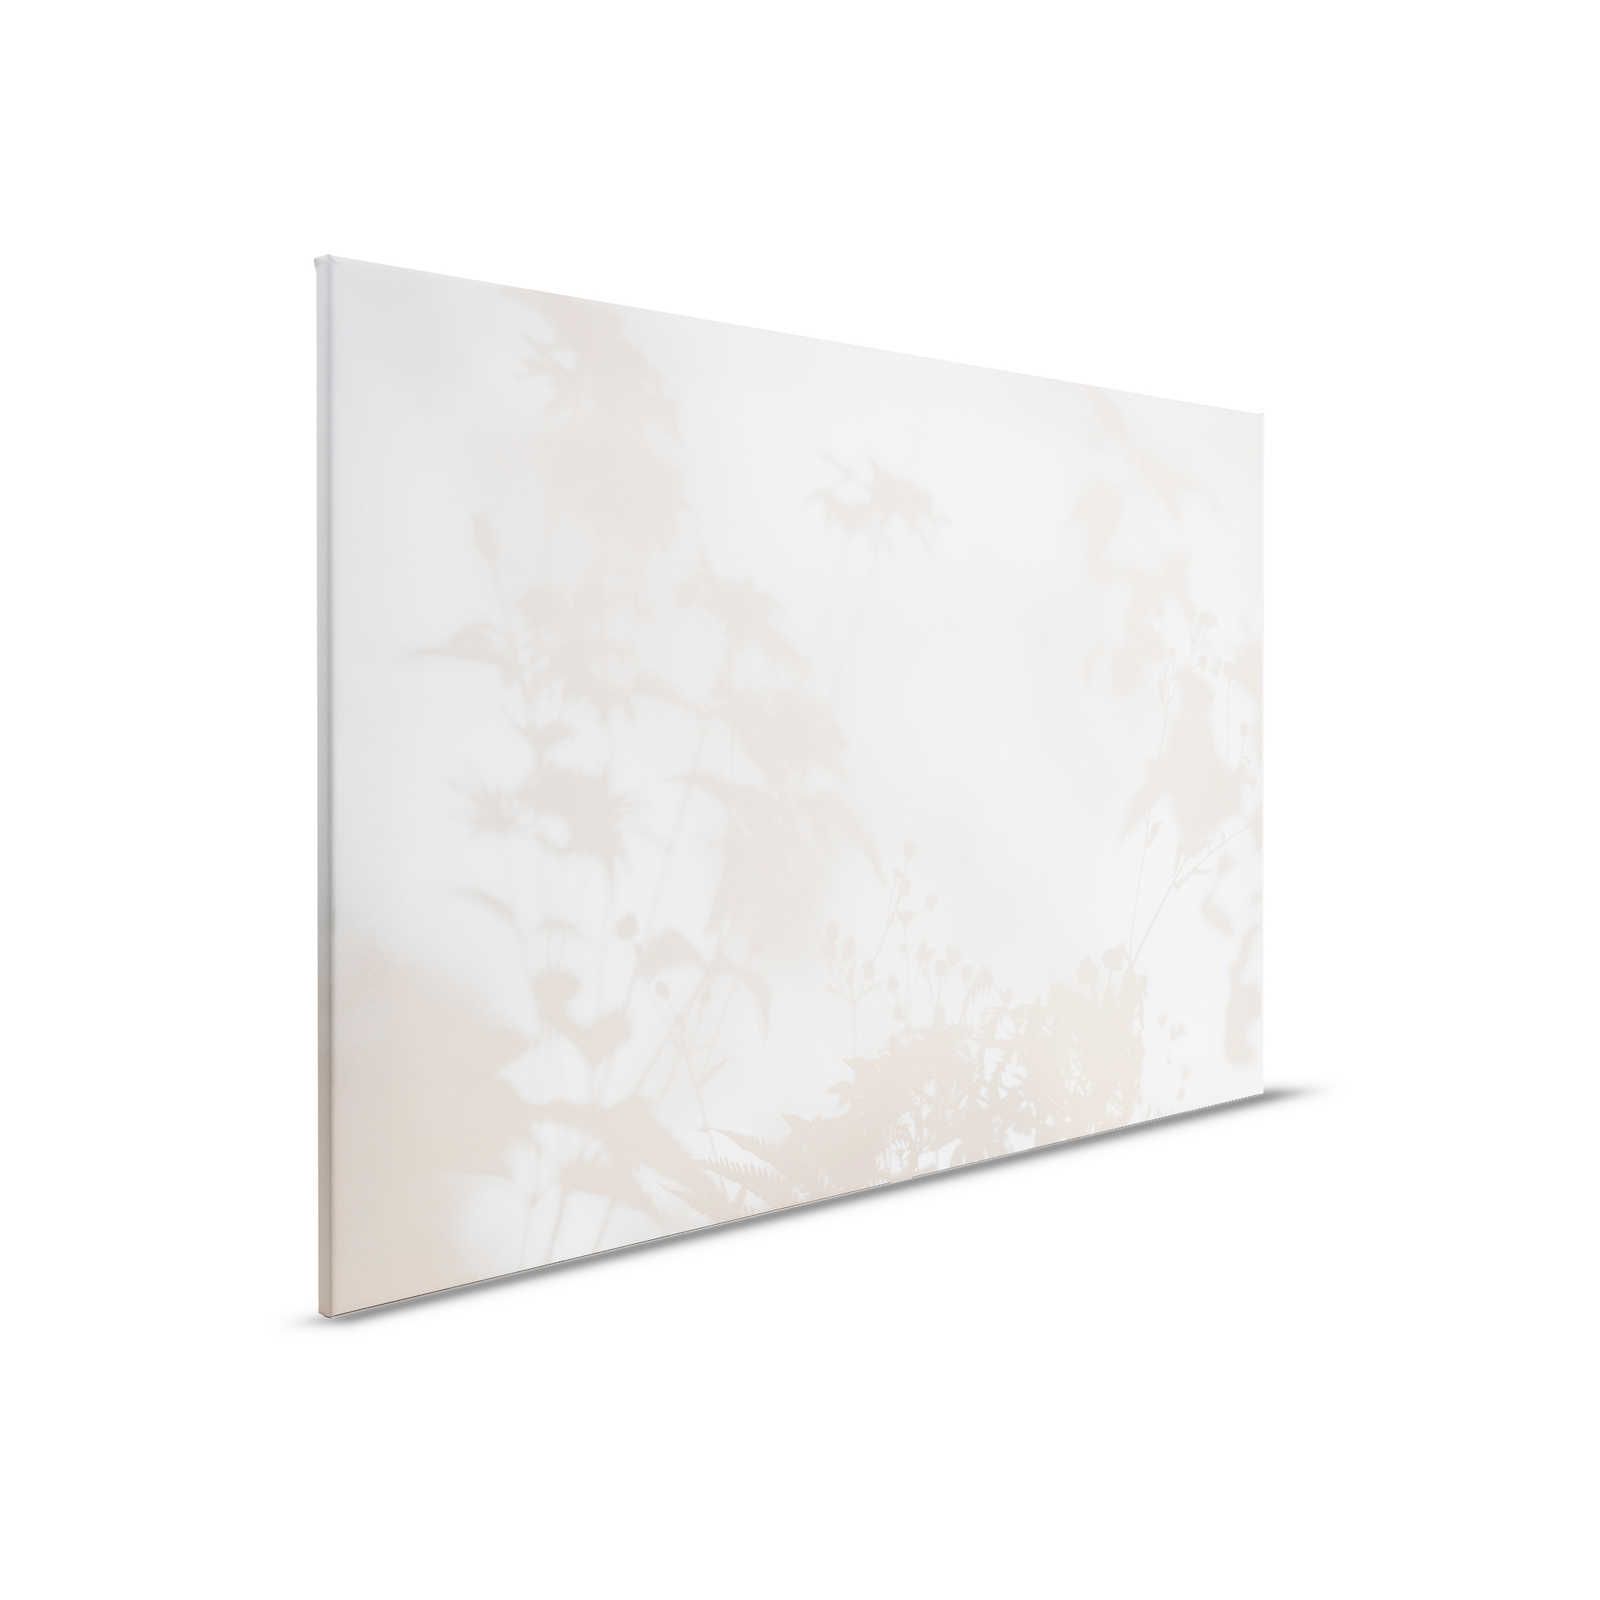 Shadow Room 1 - Naturaleza Cuadro en lienzo Beige y Blanco, diseño difuminado - 0,90 m x 0,60 m
